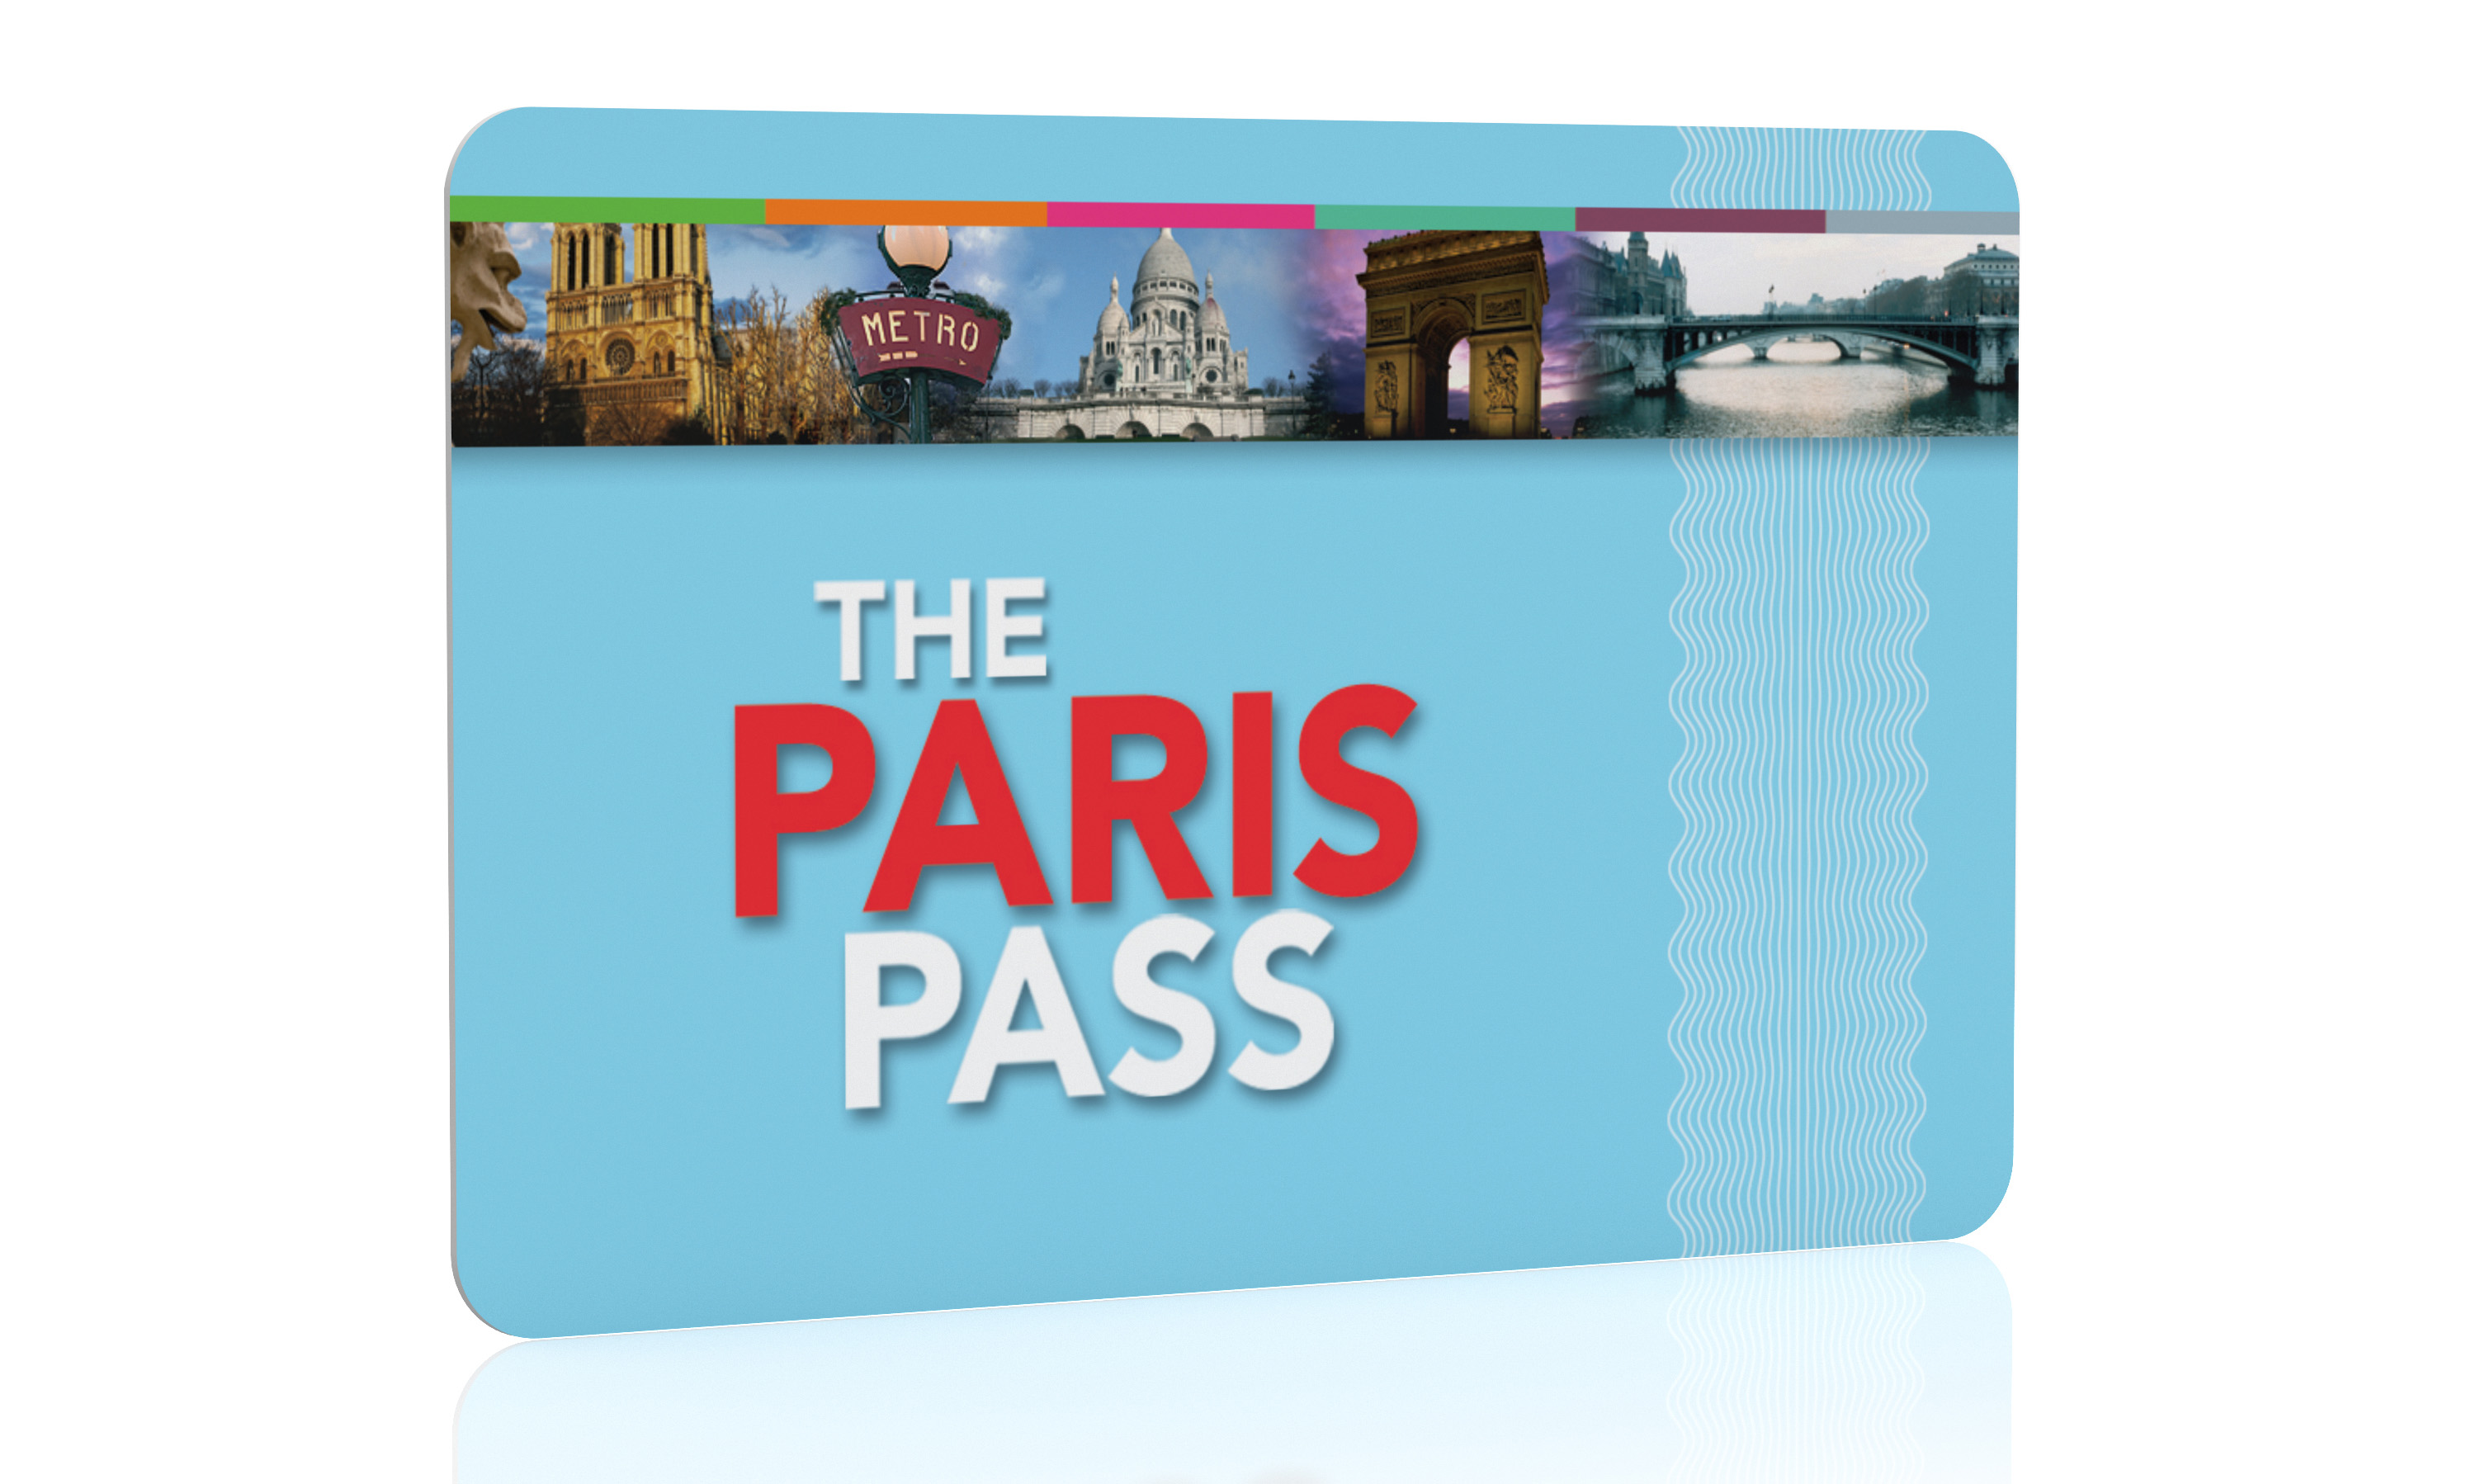 tourist pass in paris